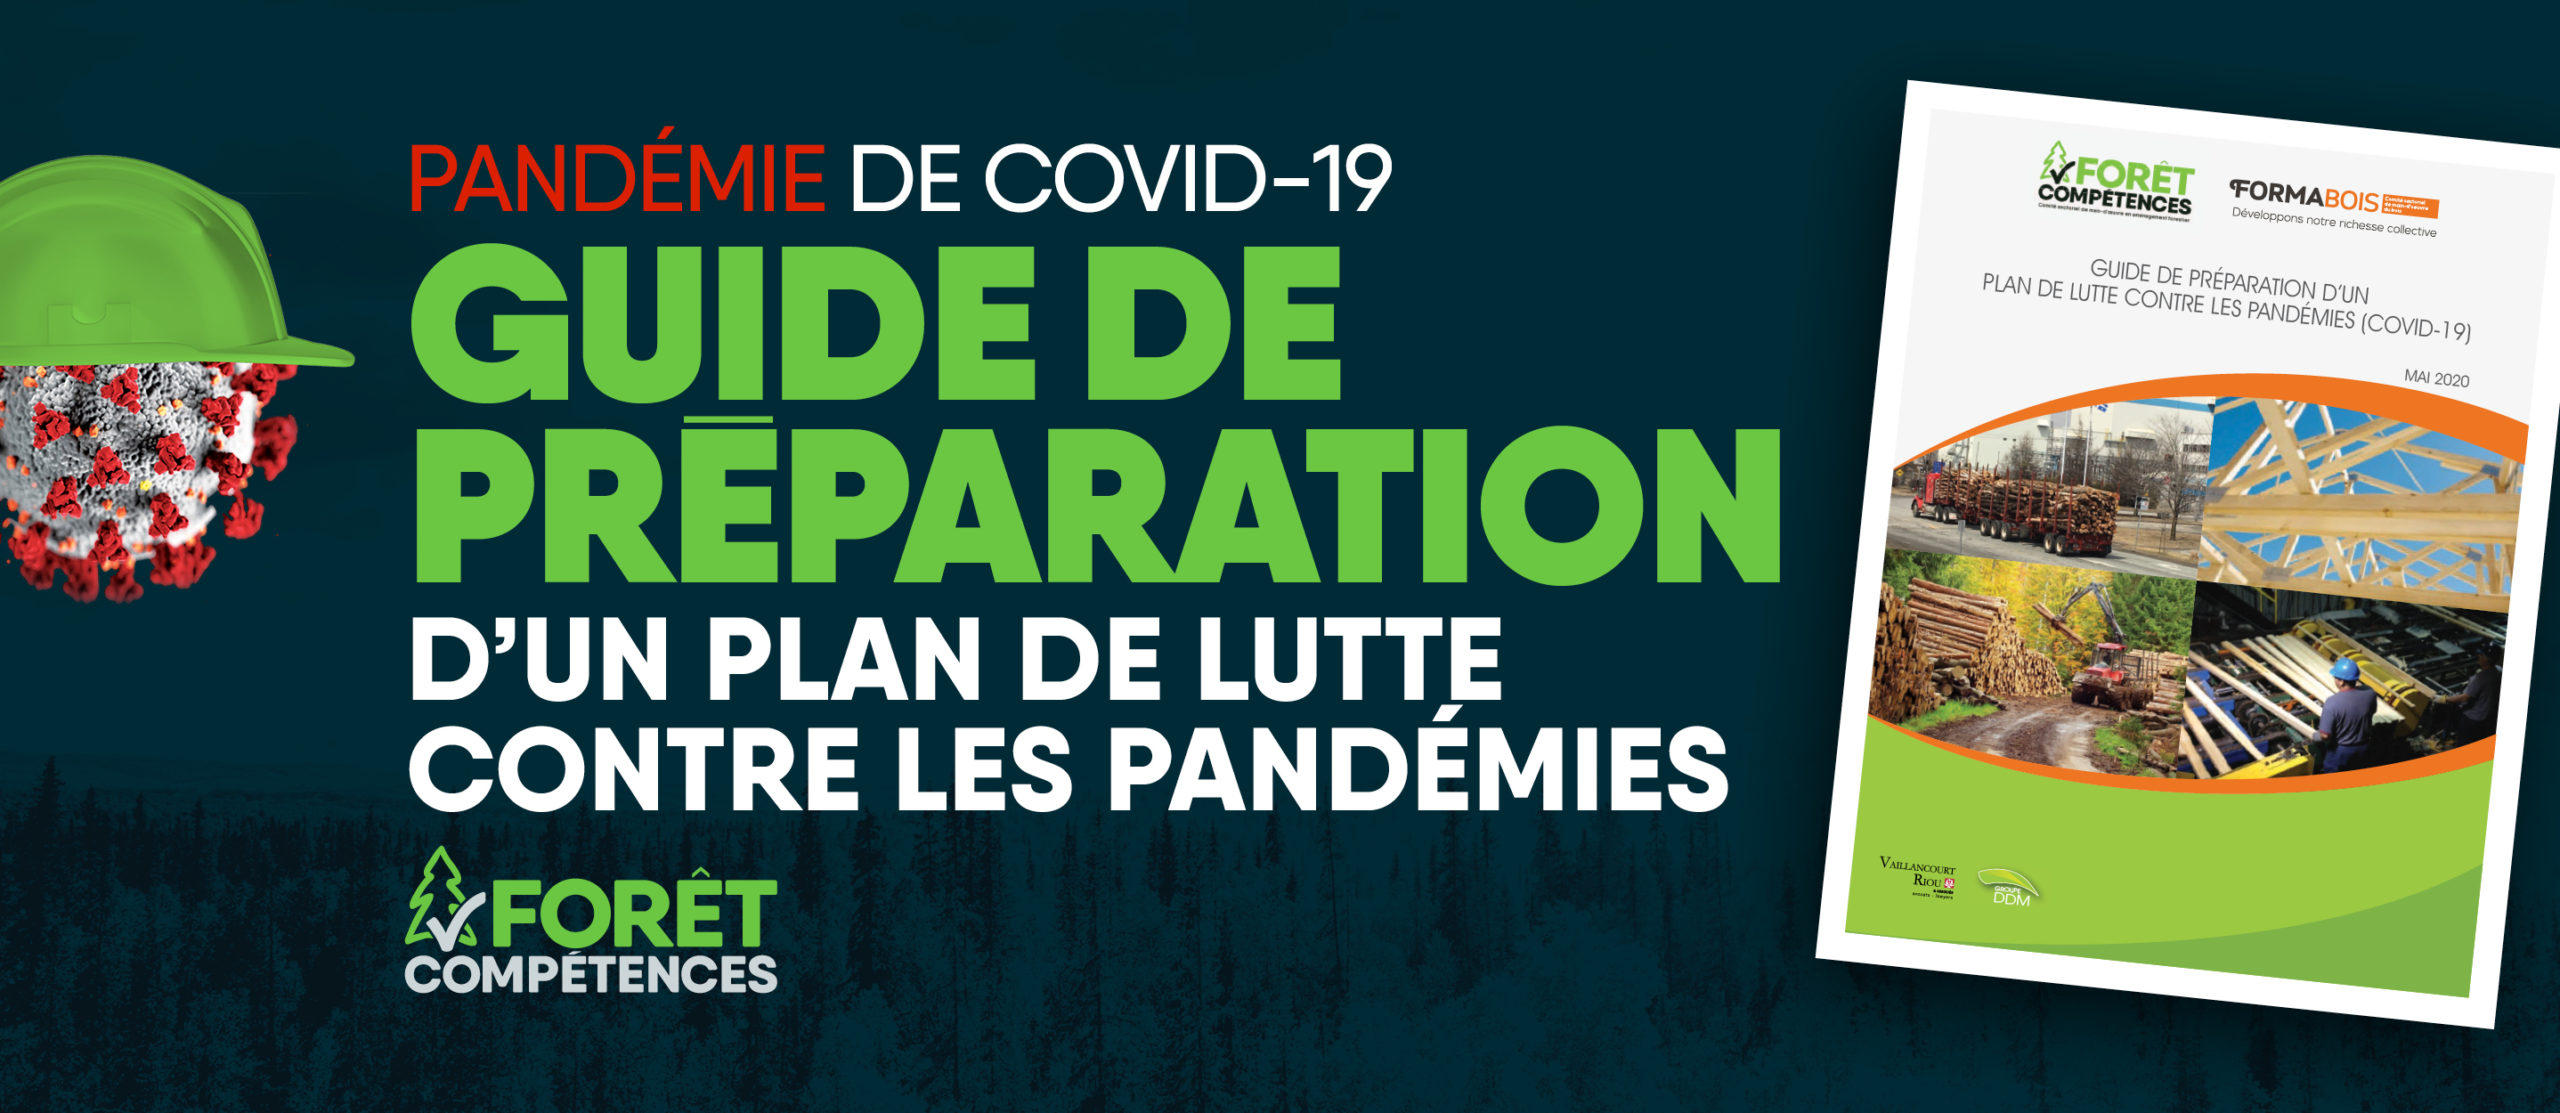 Guide de préparation d’un plan de lutte contre les pandémies